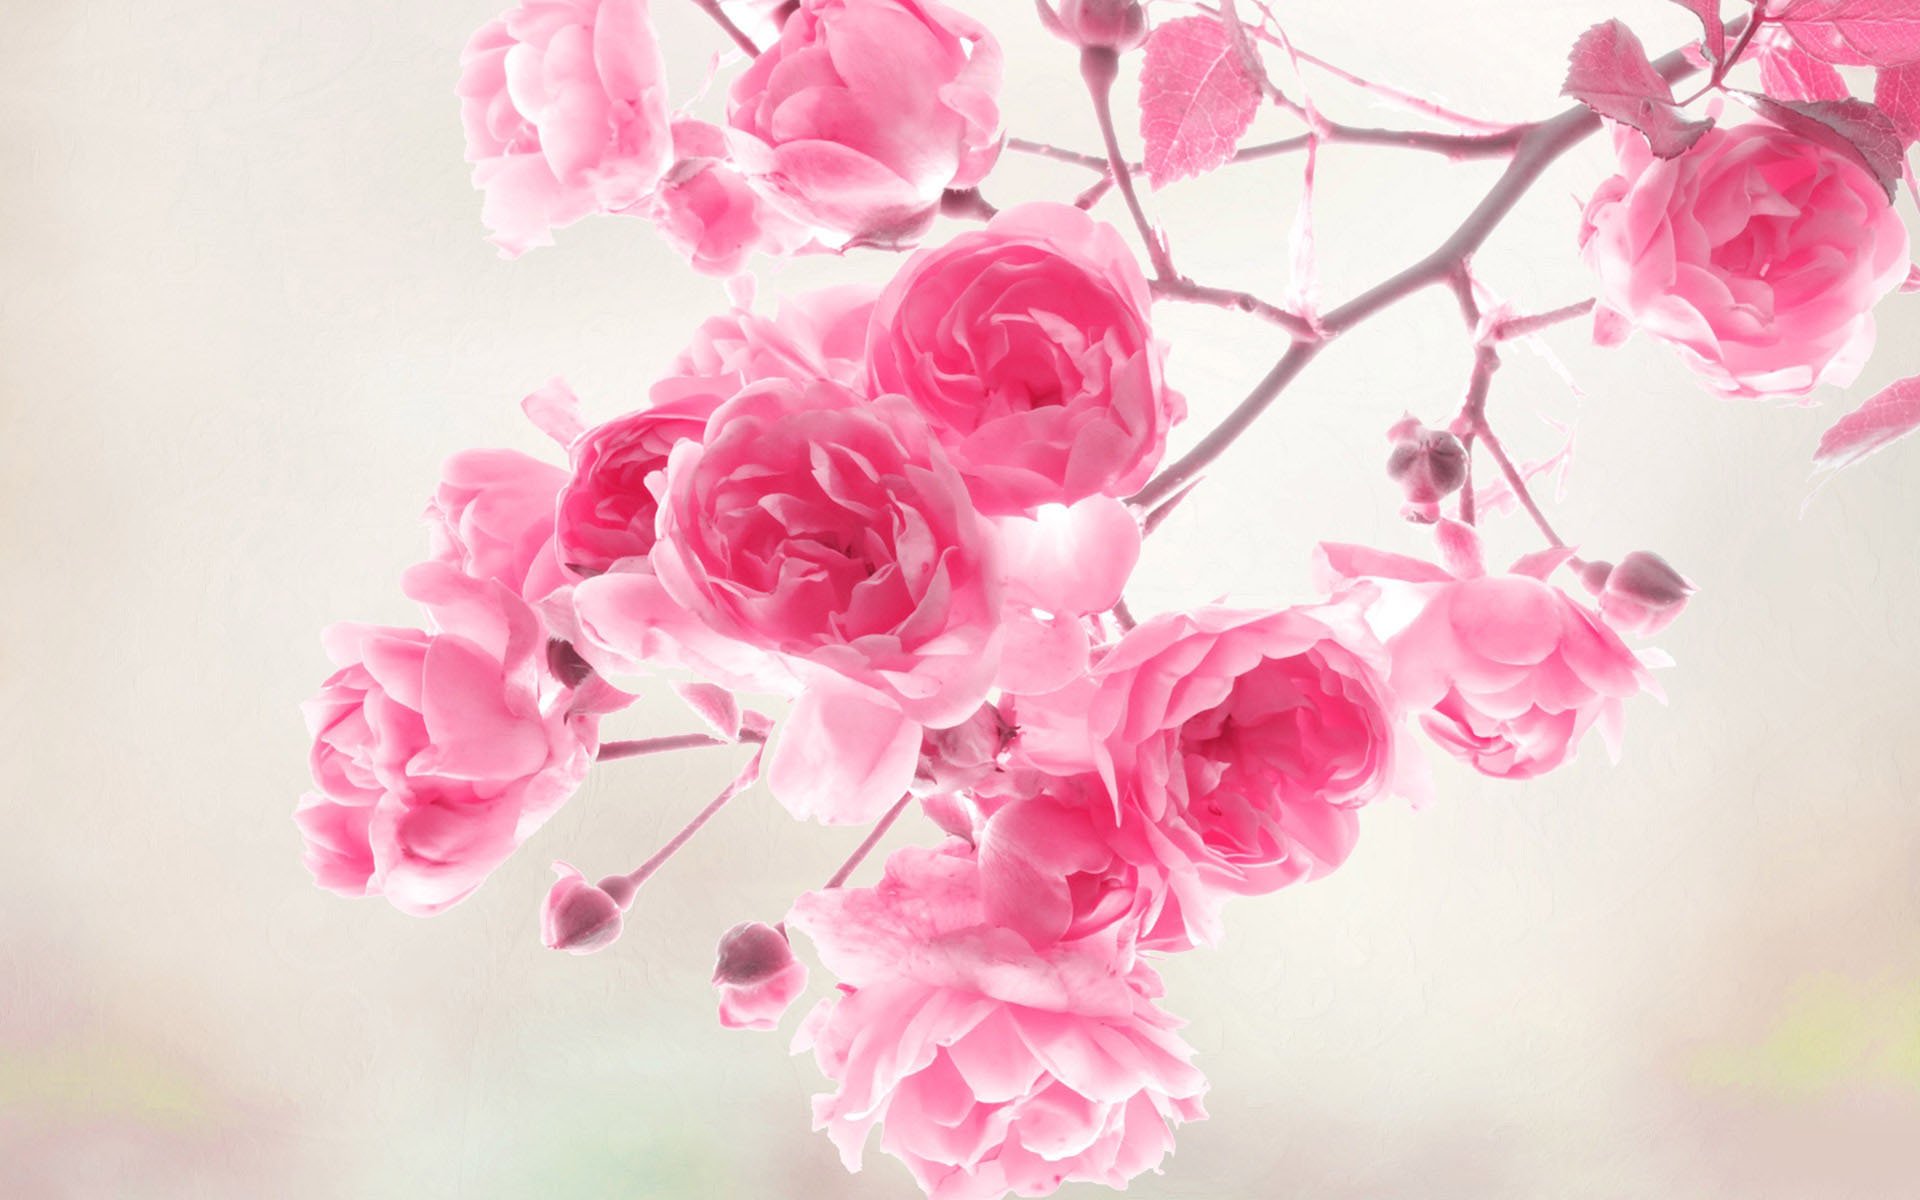 world best hd wallpaper for mobile,pink,flower,garden roses,petal,rose